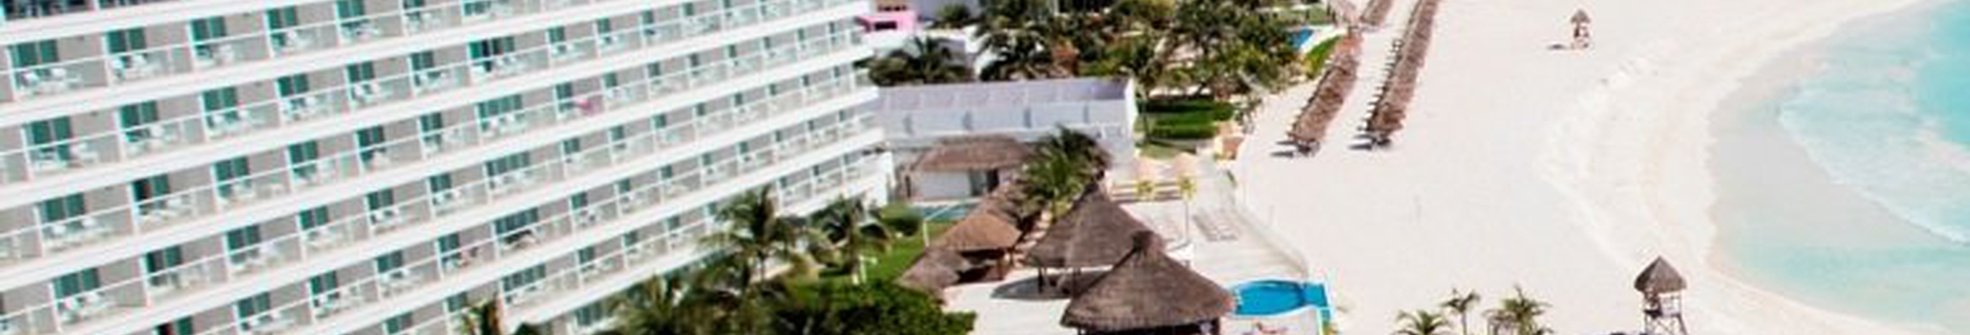 Hotel Krystal Cancún Hotel Krystal Cancún - 